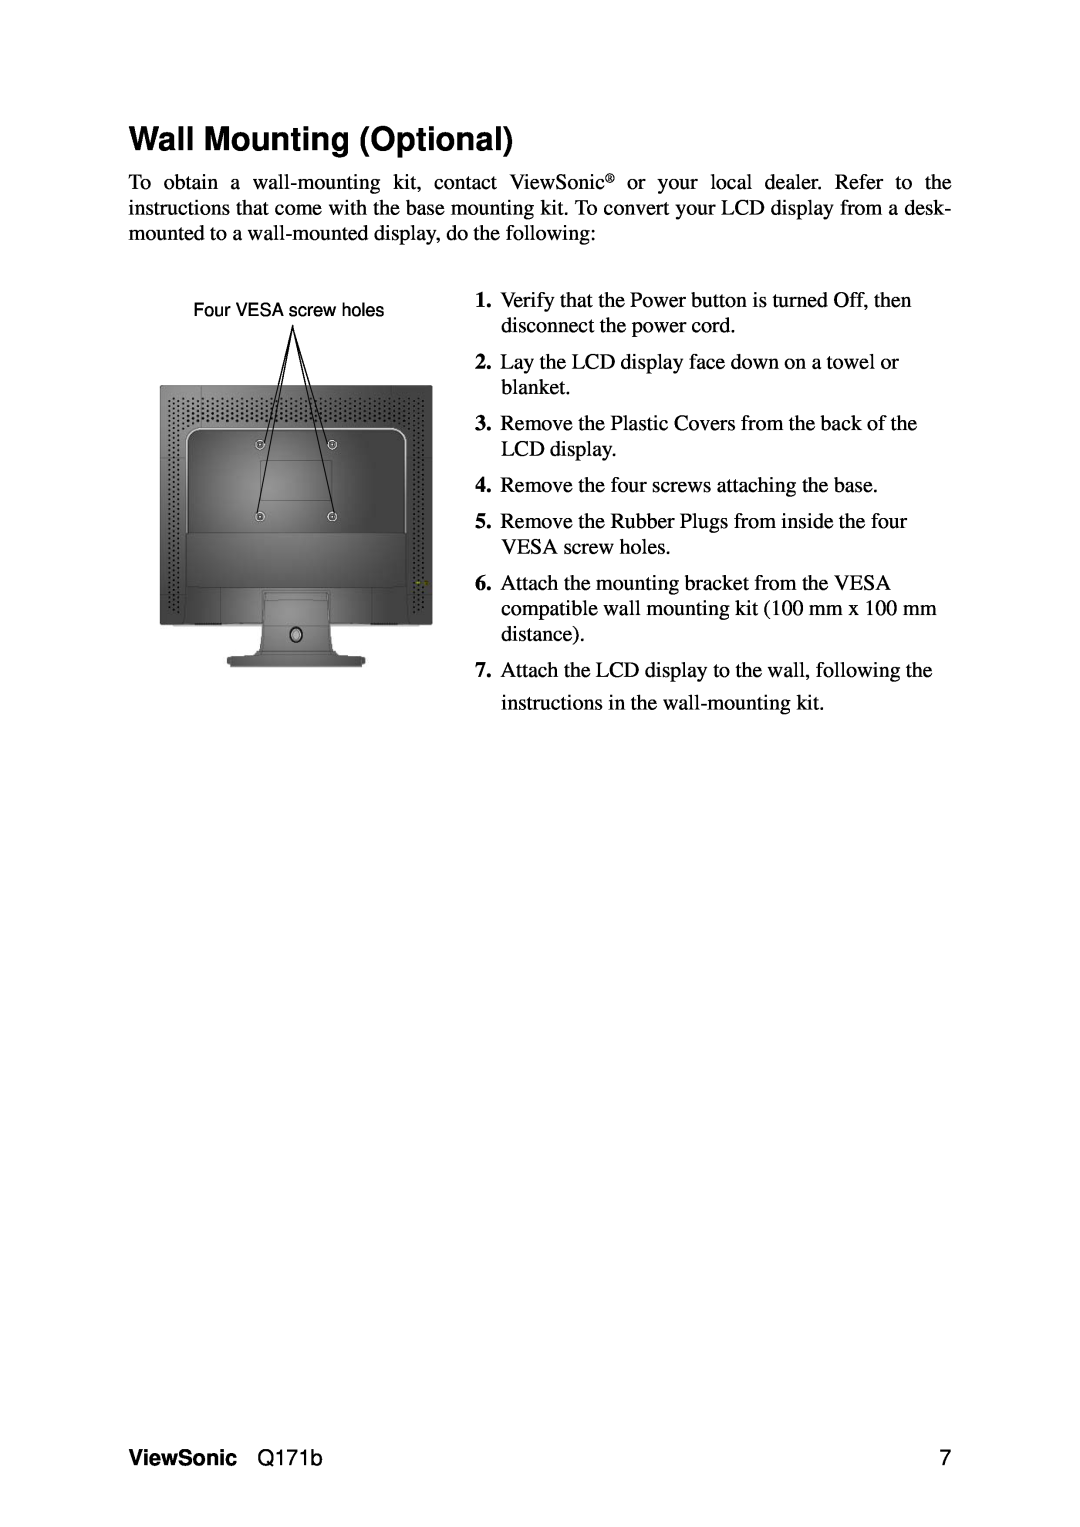 ViewSonic VS11351 manual Wall Mounting Optional, ViewSonic Q171b 